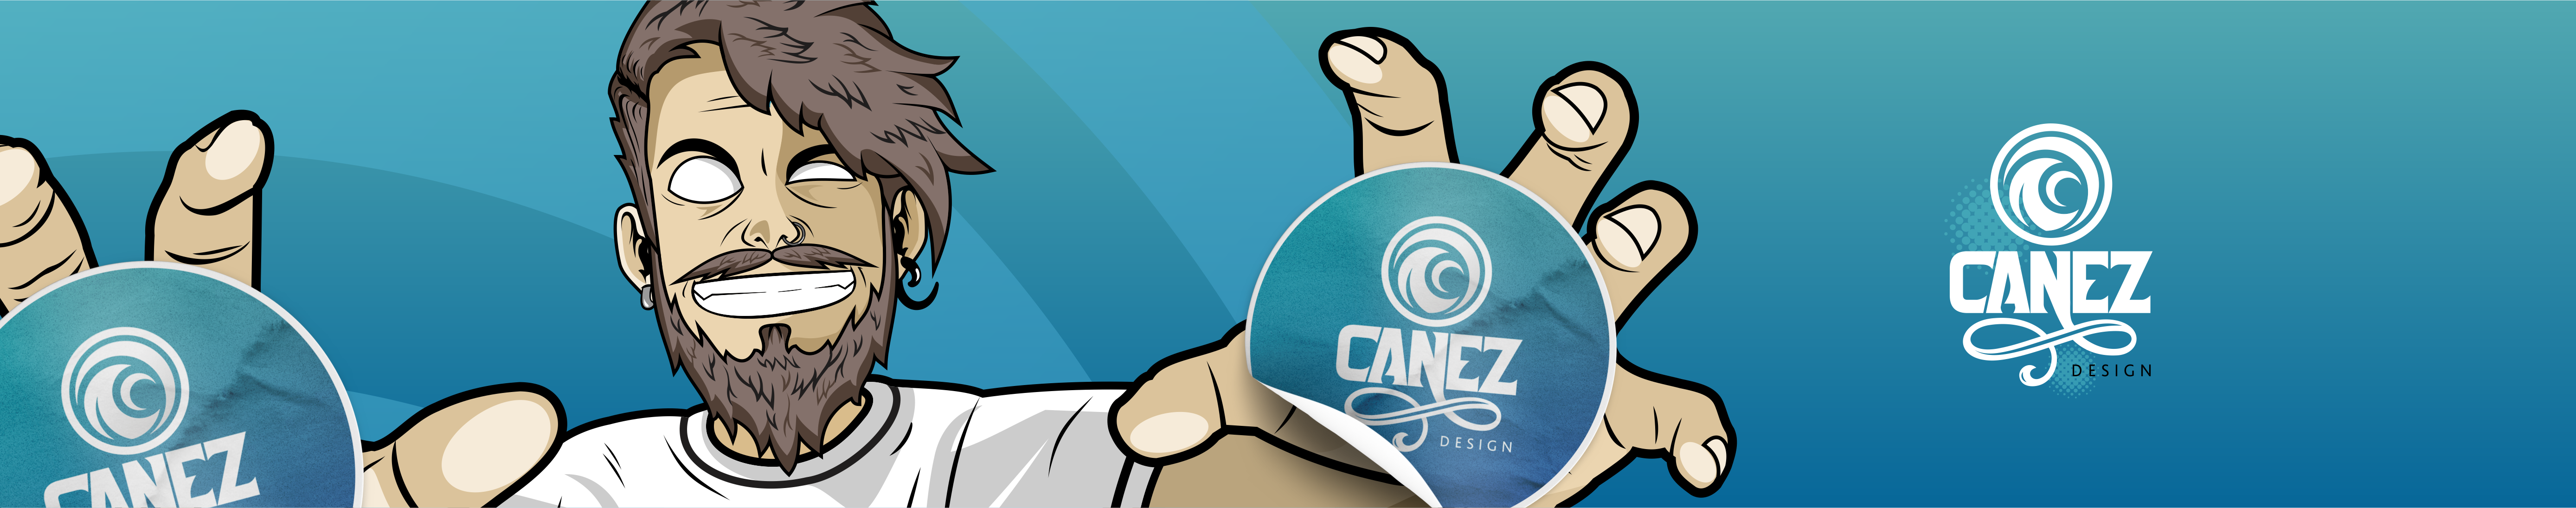 Vinicius Canez's profile banner